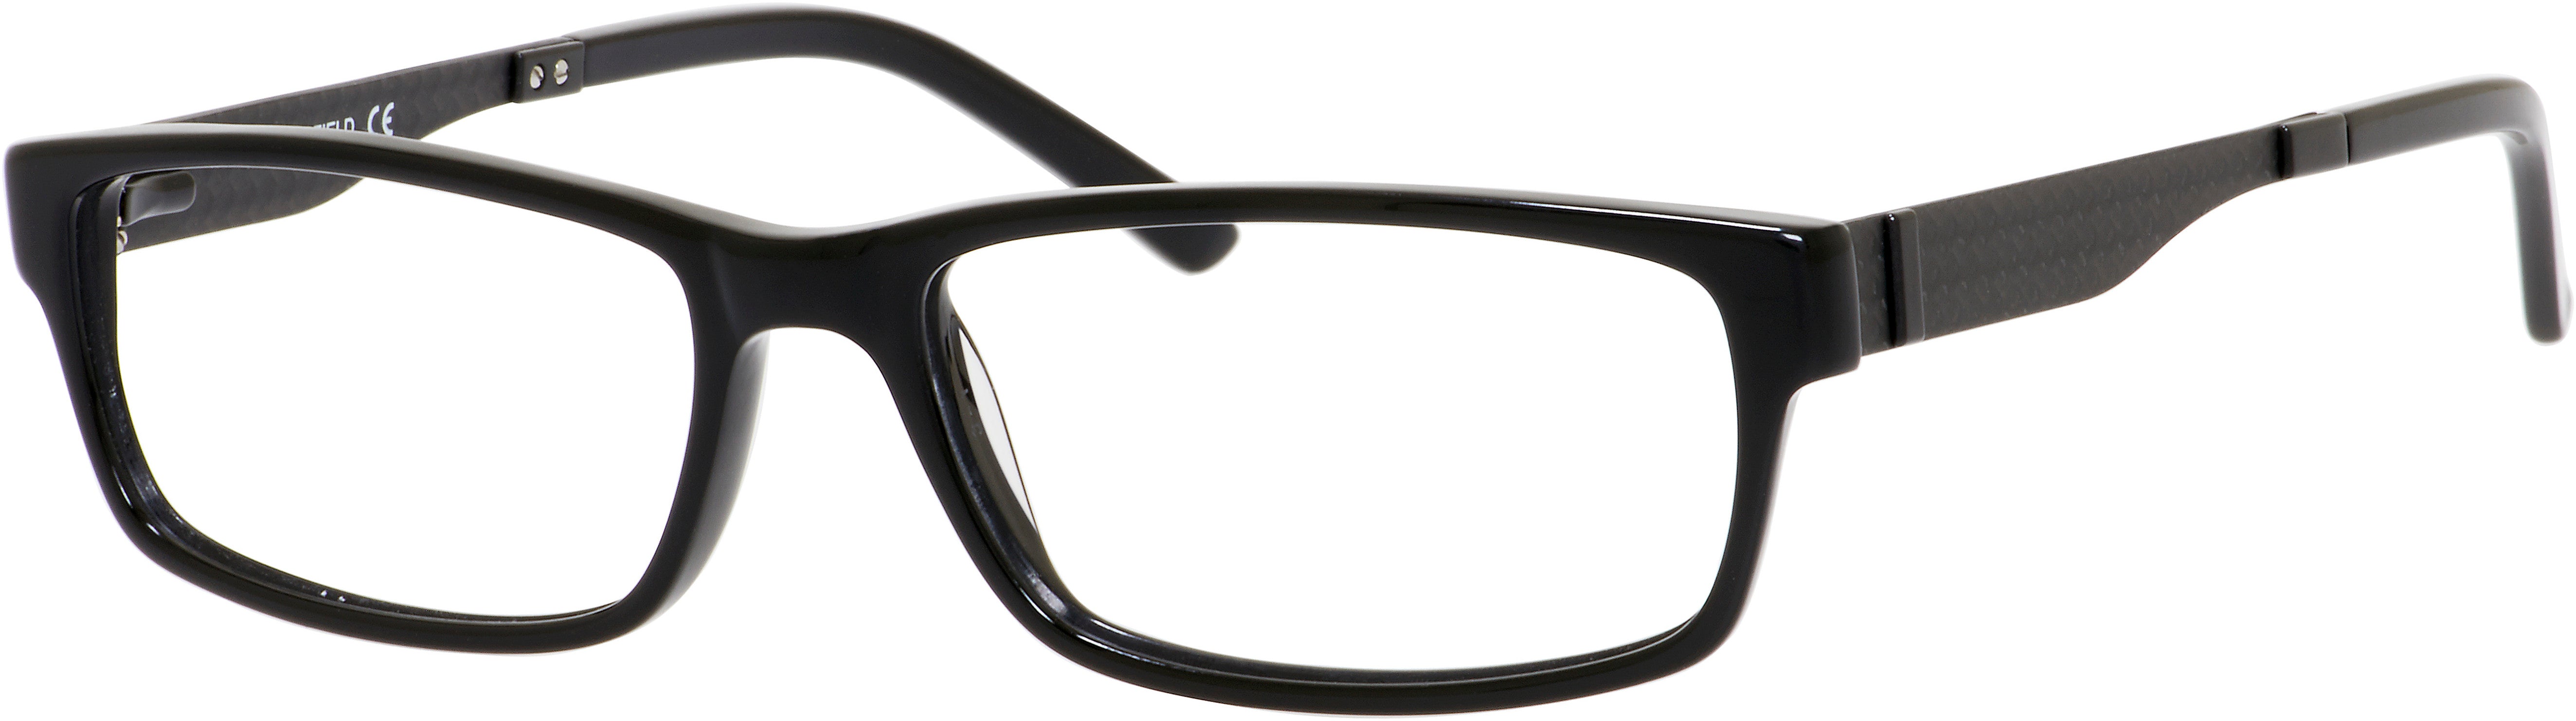  Chesterfield 22XL Rectangular Eyeglasses 0807-0807  Black (00 Demo Lens)